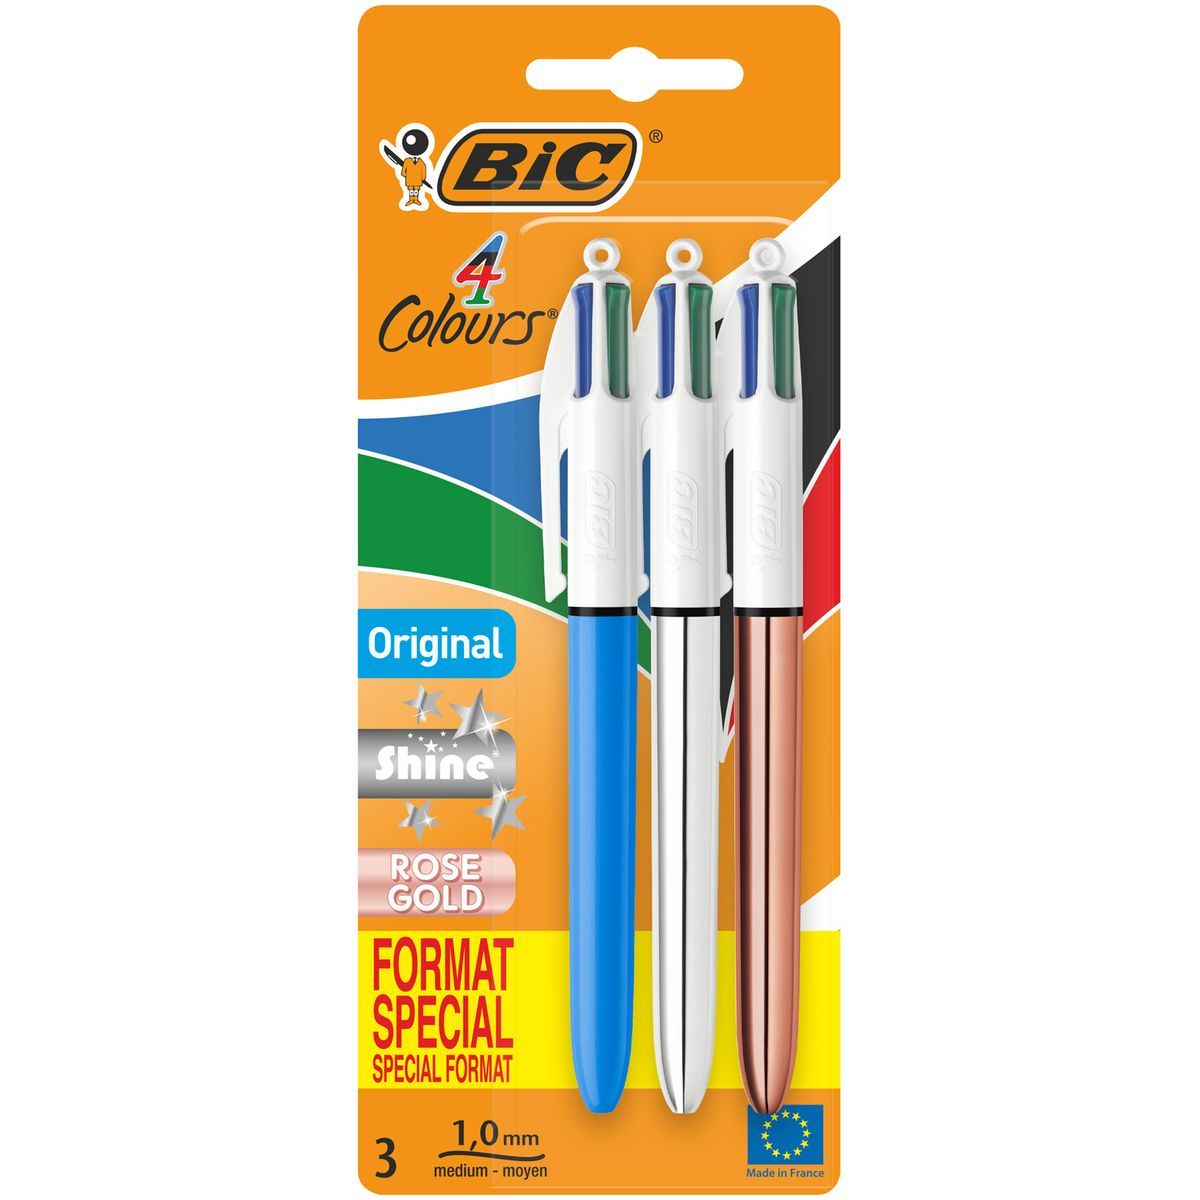 Lot de 3 stylos BIC 4 couleurs Mini Format Corps Bleu